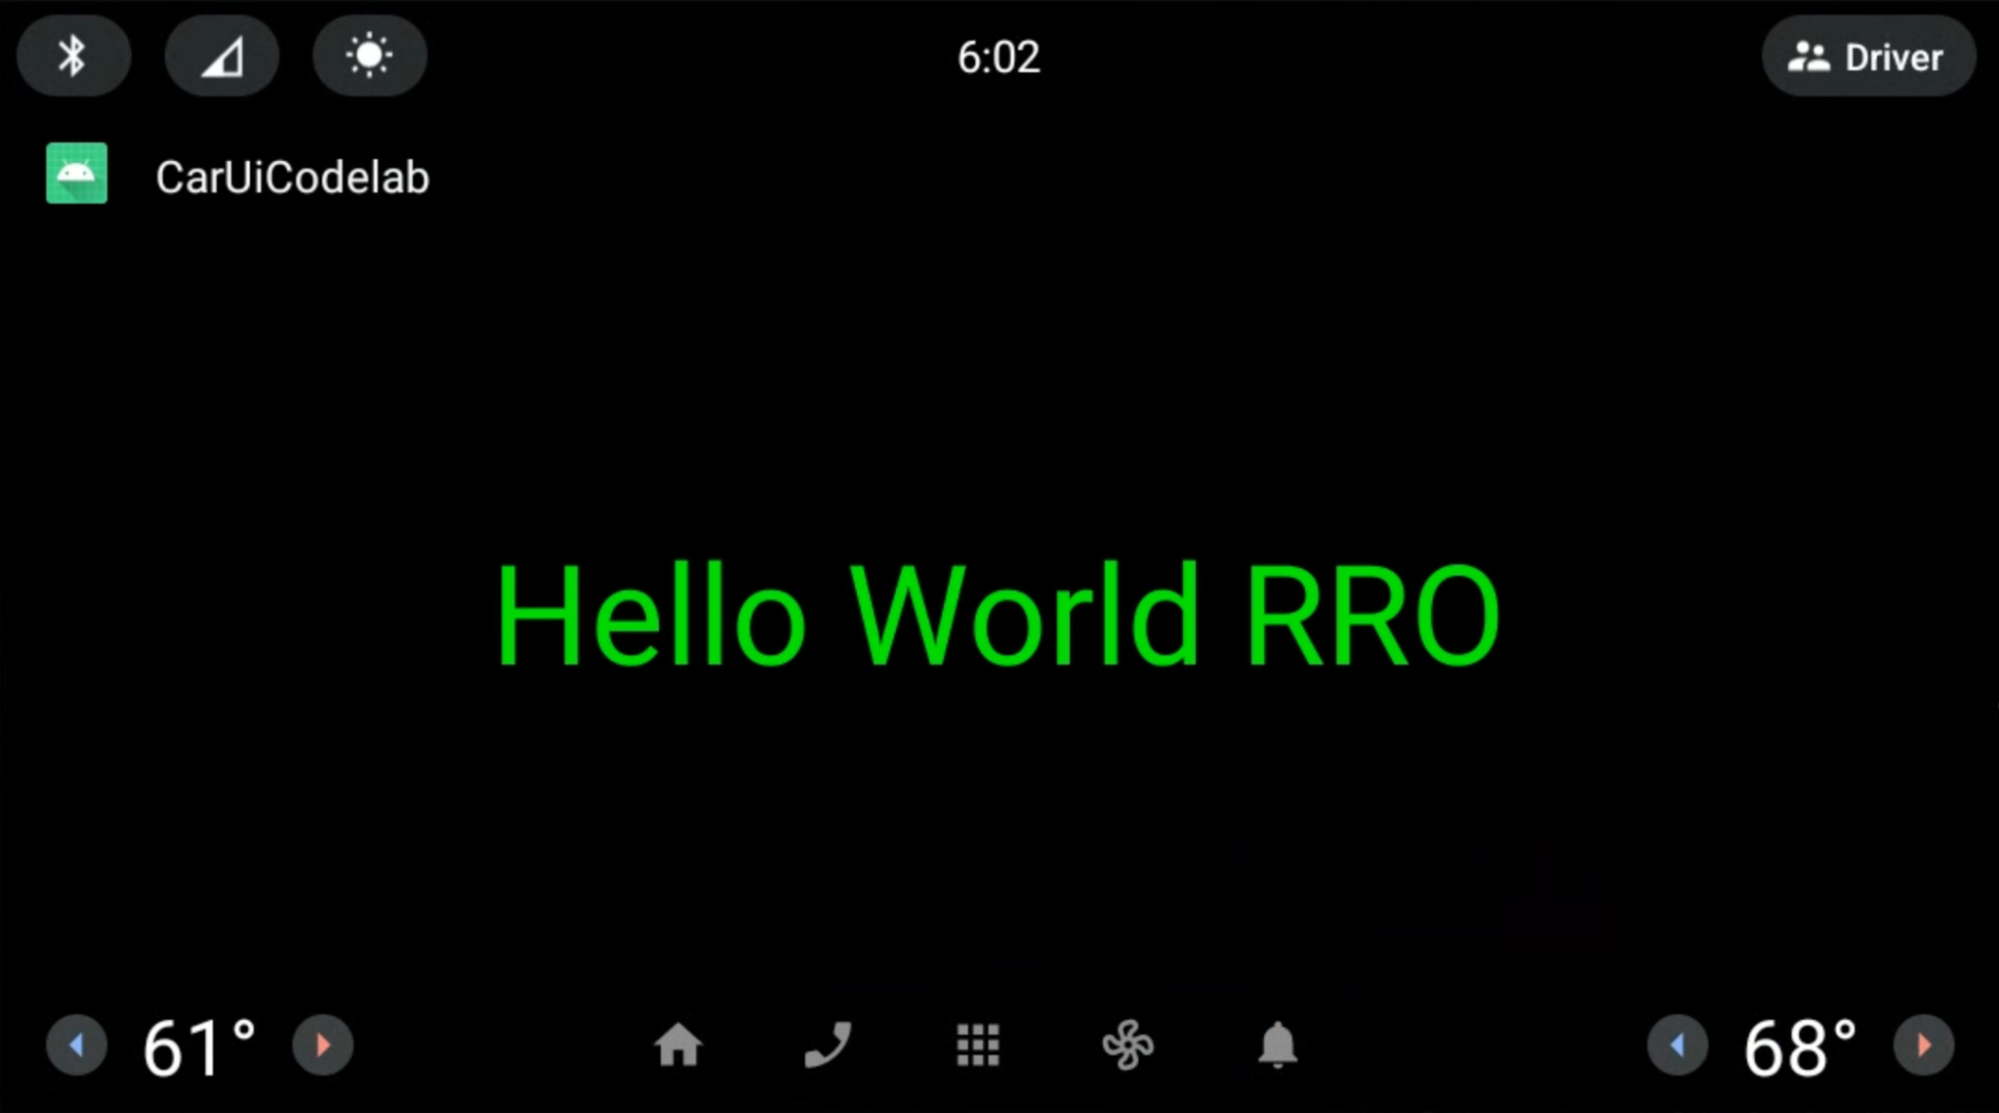 สวัสดีชาวโลก RRO